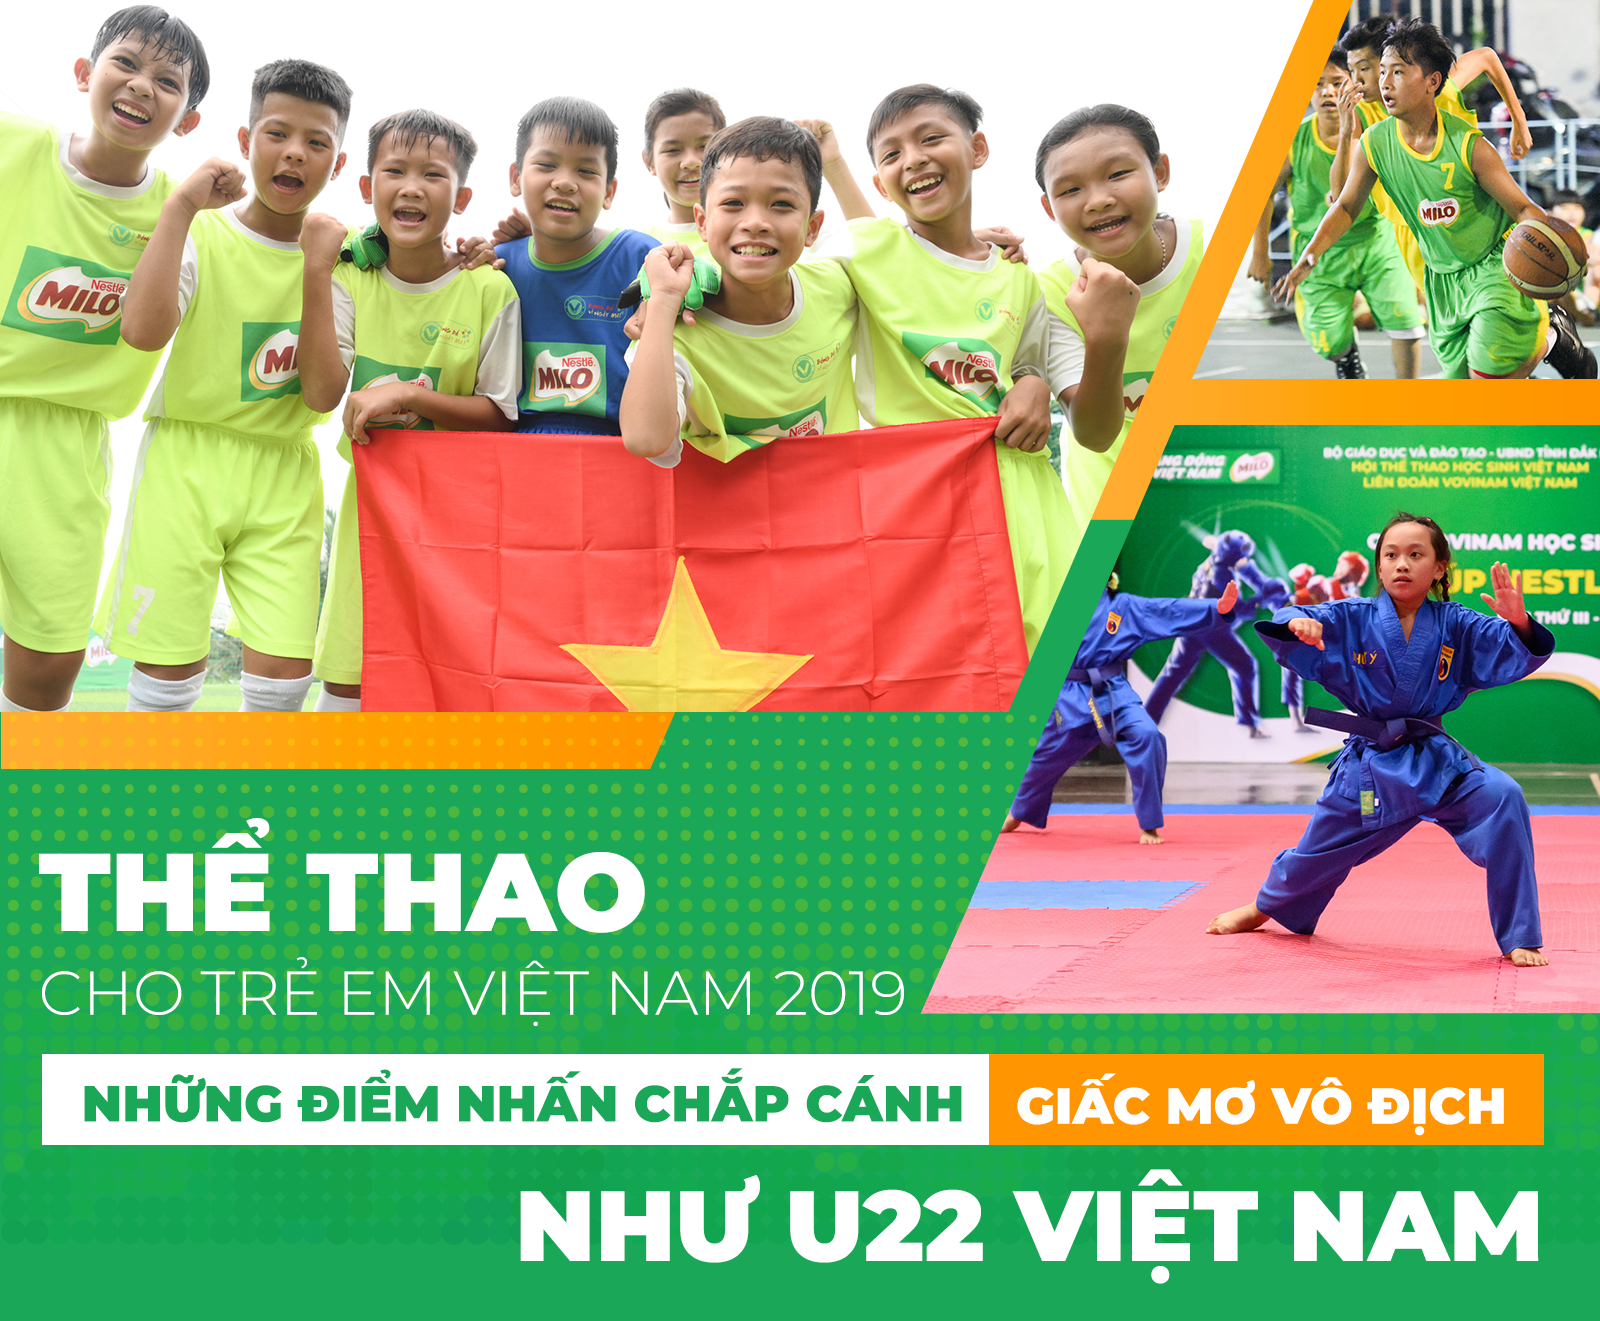 Thể thao cho trẻ em Việt Nam 2019: Những điểm nhấn chắp cánh giấc mơ vô địch như U22 Việt Nam - 1